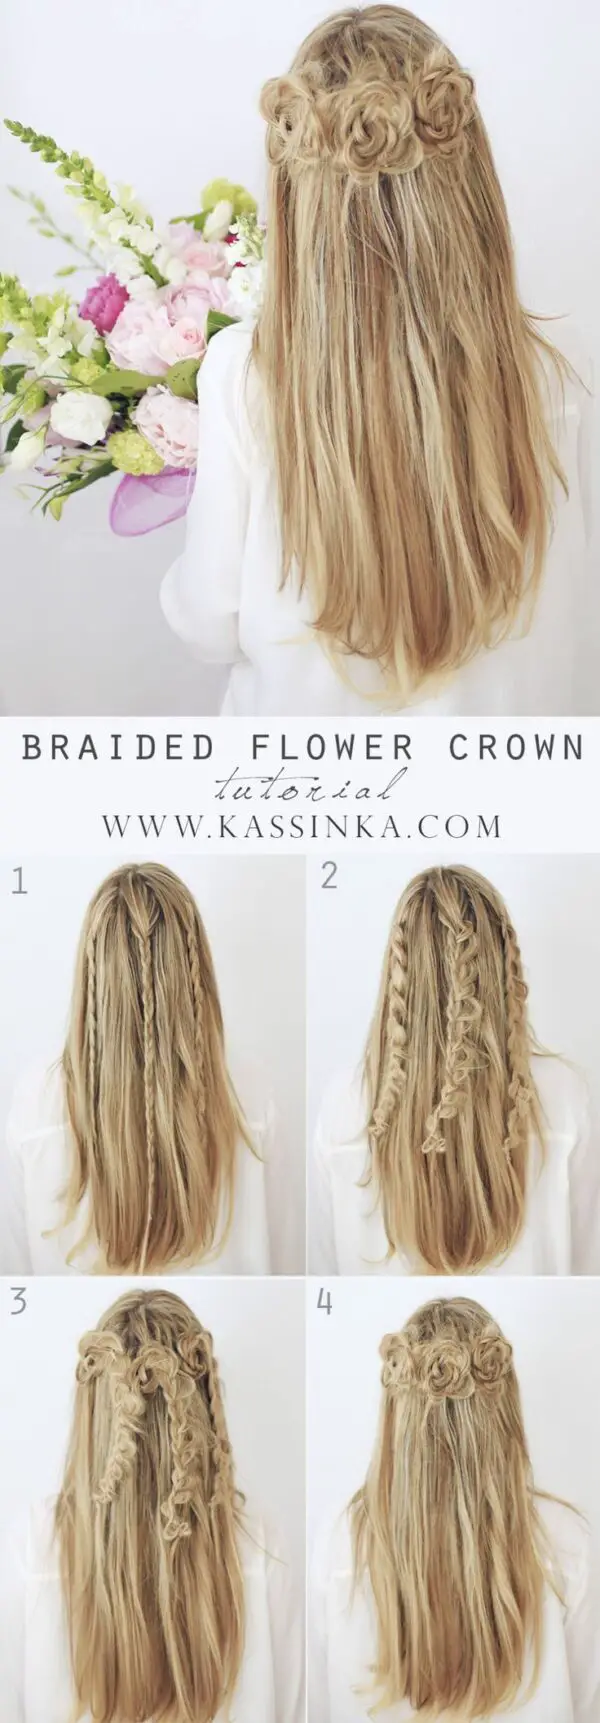 braided-flower-crown